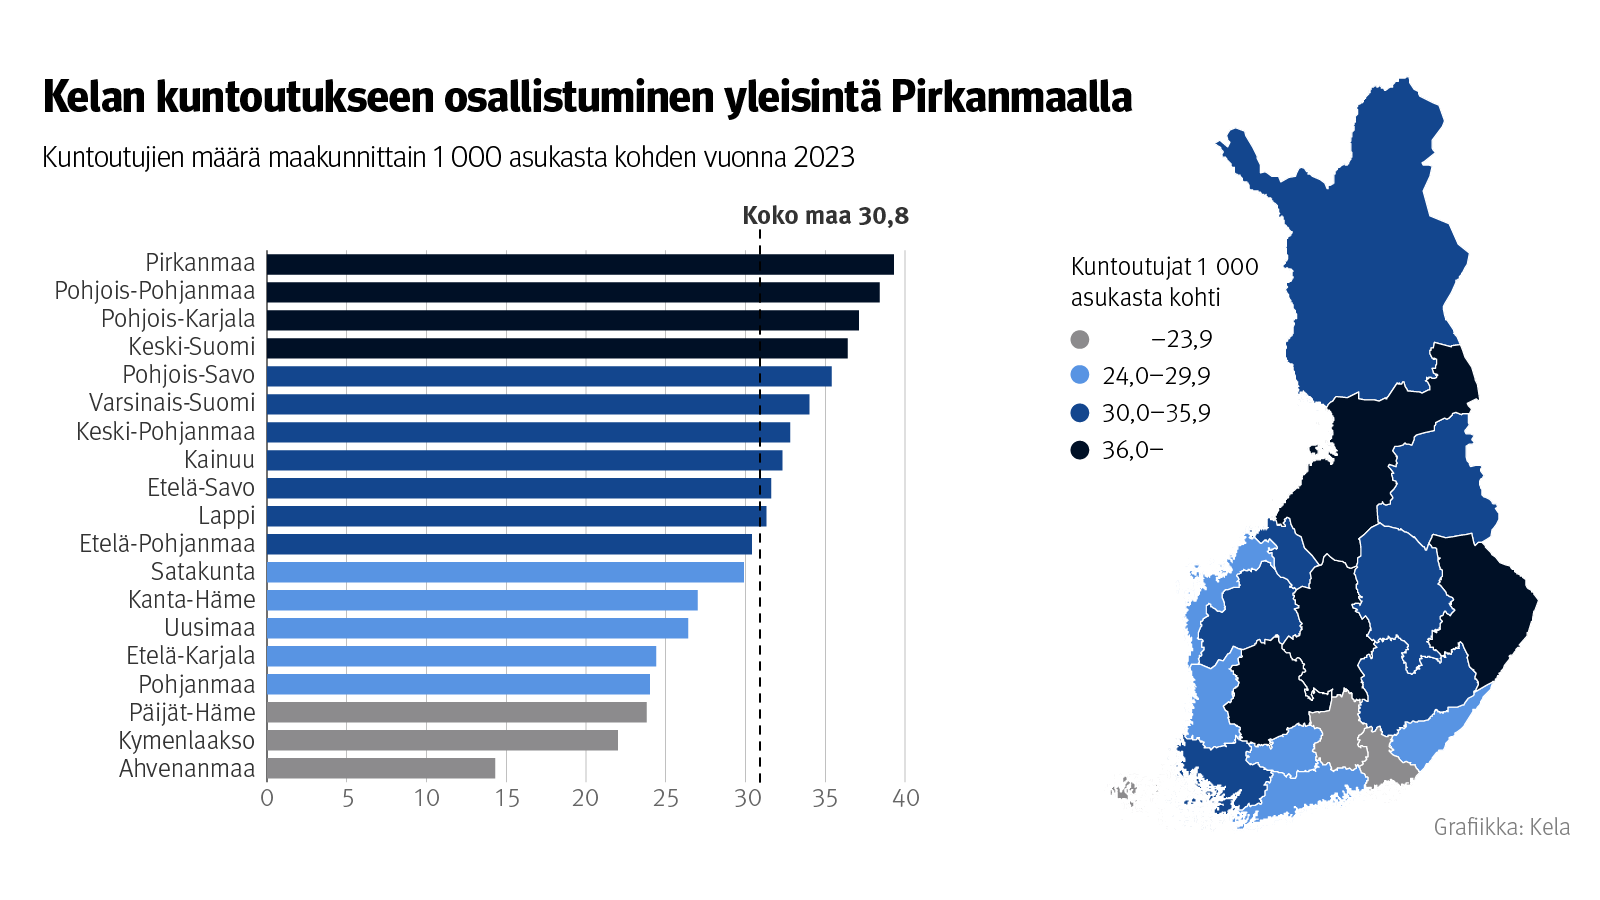 Kuvion otsikko: Kelan kuntoutukseen osallistuminen yleisintä Pirkanmaalla. Kuntoutujien määrä maakunnittain 1000 asukasta kohden vuonna 2023. Eniten kuntoutujia oli Pirkanmaalla, vähiten Ahvenanmaalla.